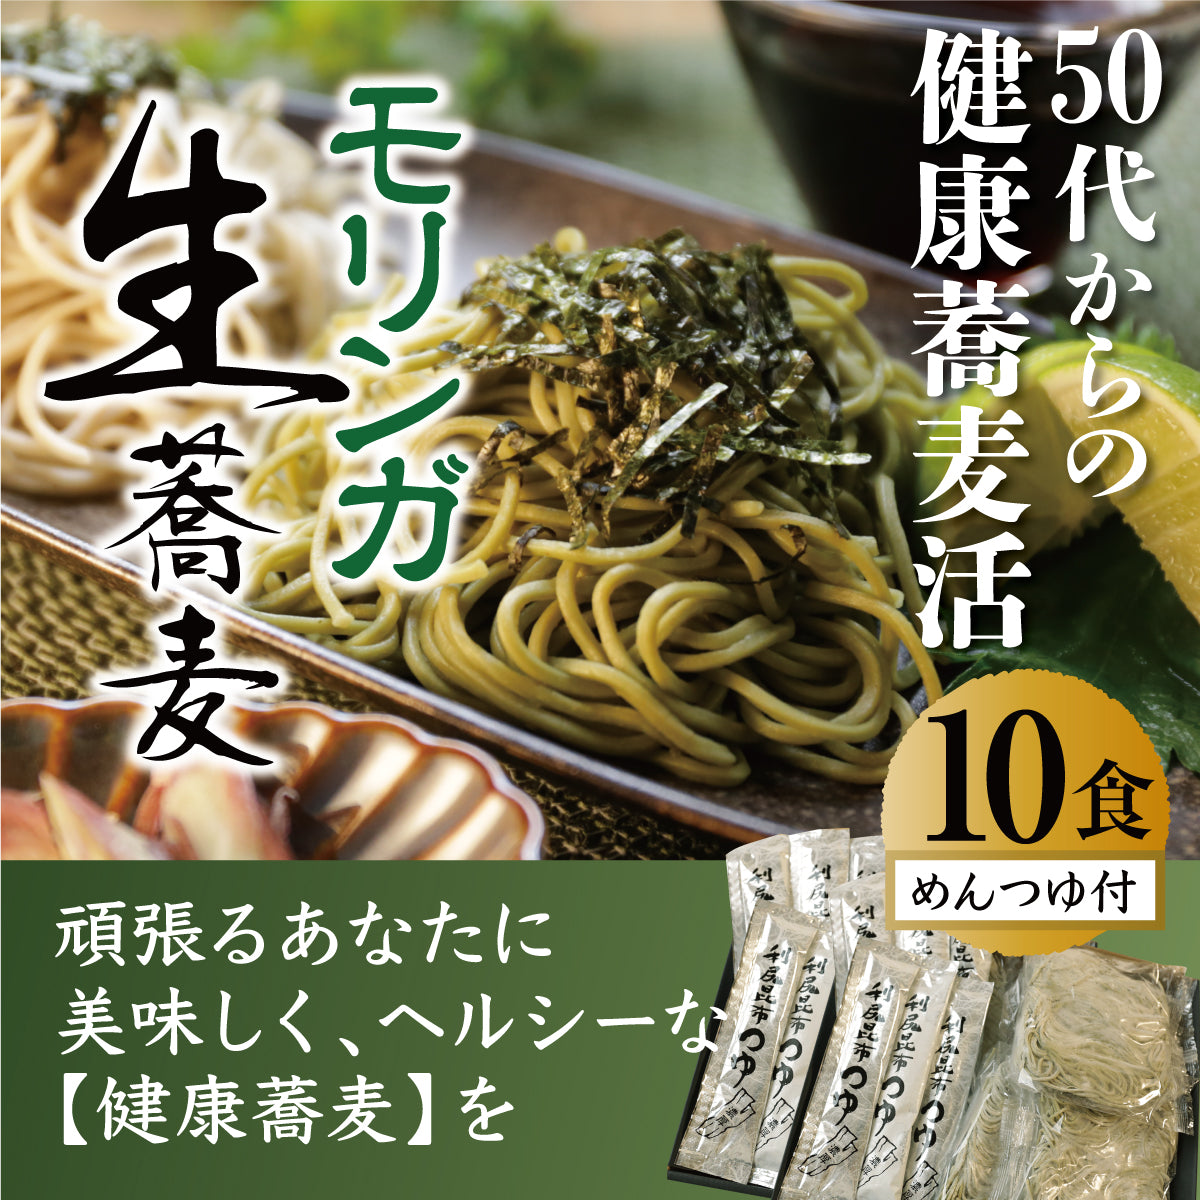 モリンガ生蕎麦 10食セット 【お徳用】 利尻昆布液体出汁付き